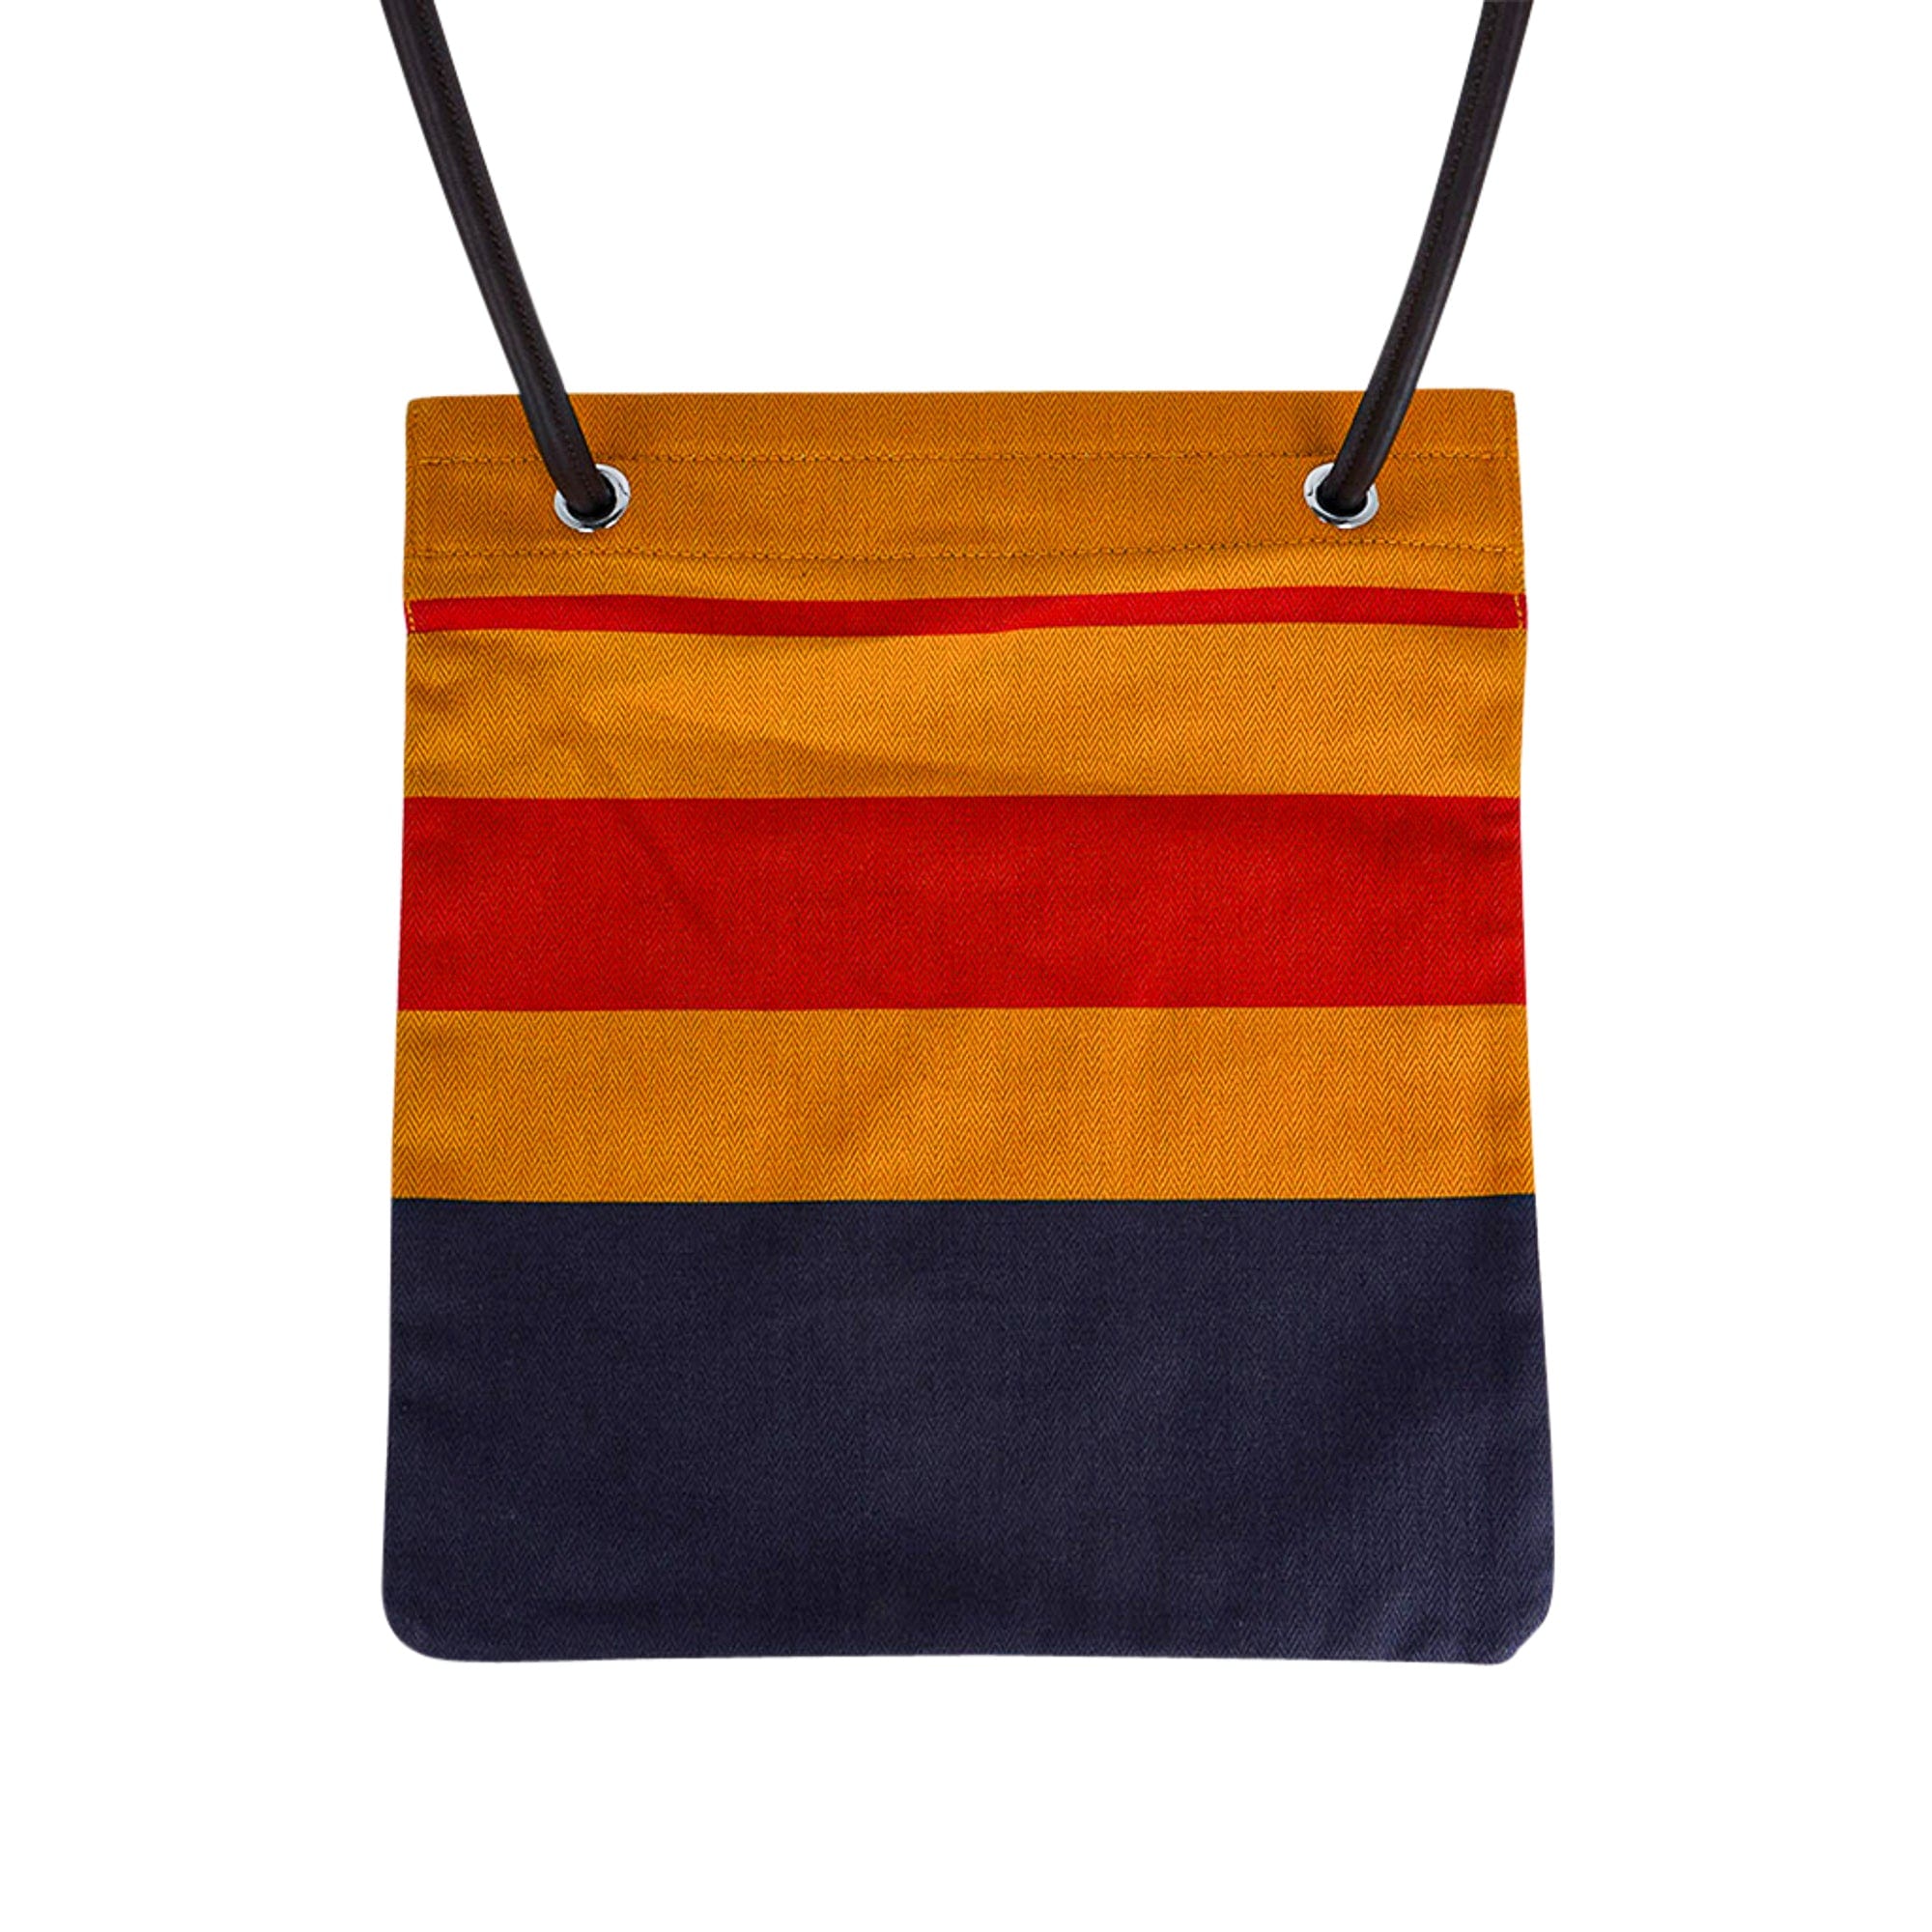 Hermes Aline Womens Shoulder Bags, Orange